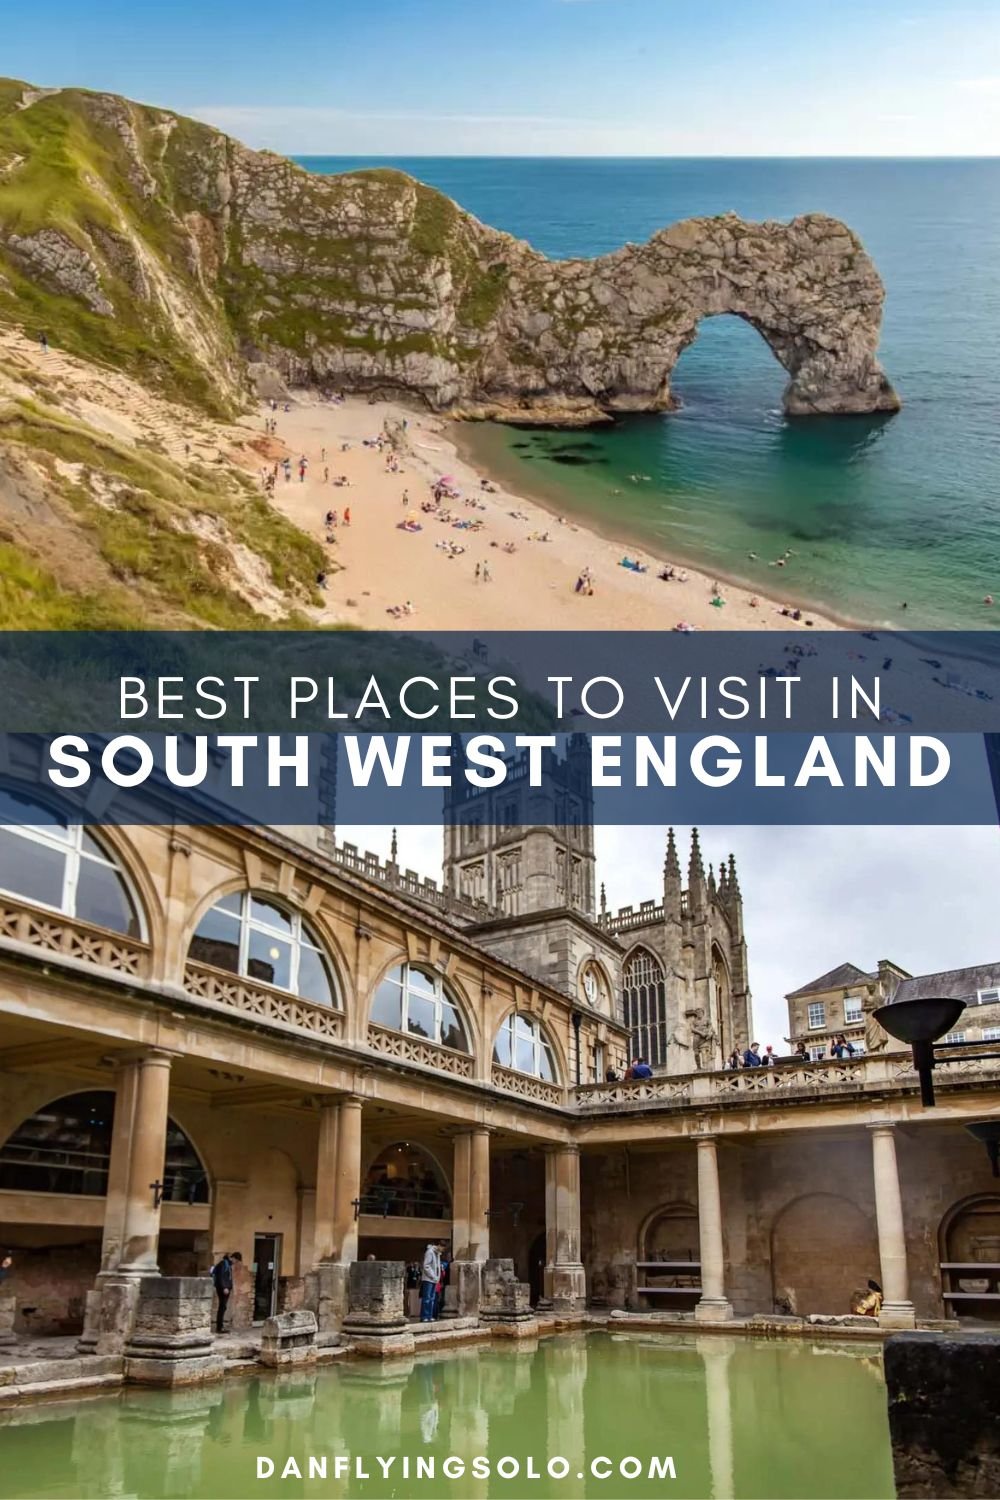 Descubra algunos de los mejores lugares para visitar en el suroeste de Inglaterra, incluidos lugares inusuales y estancias especiales para una escapada única.